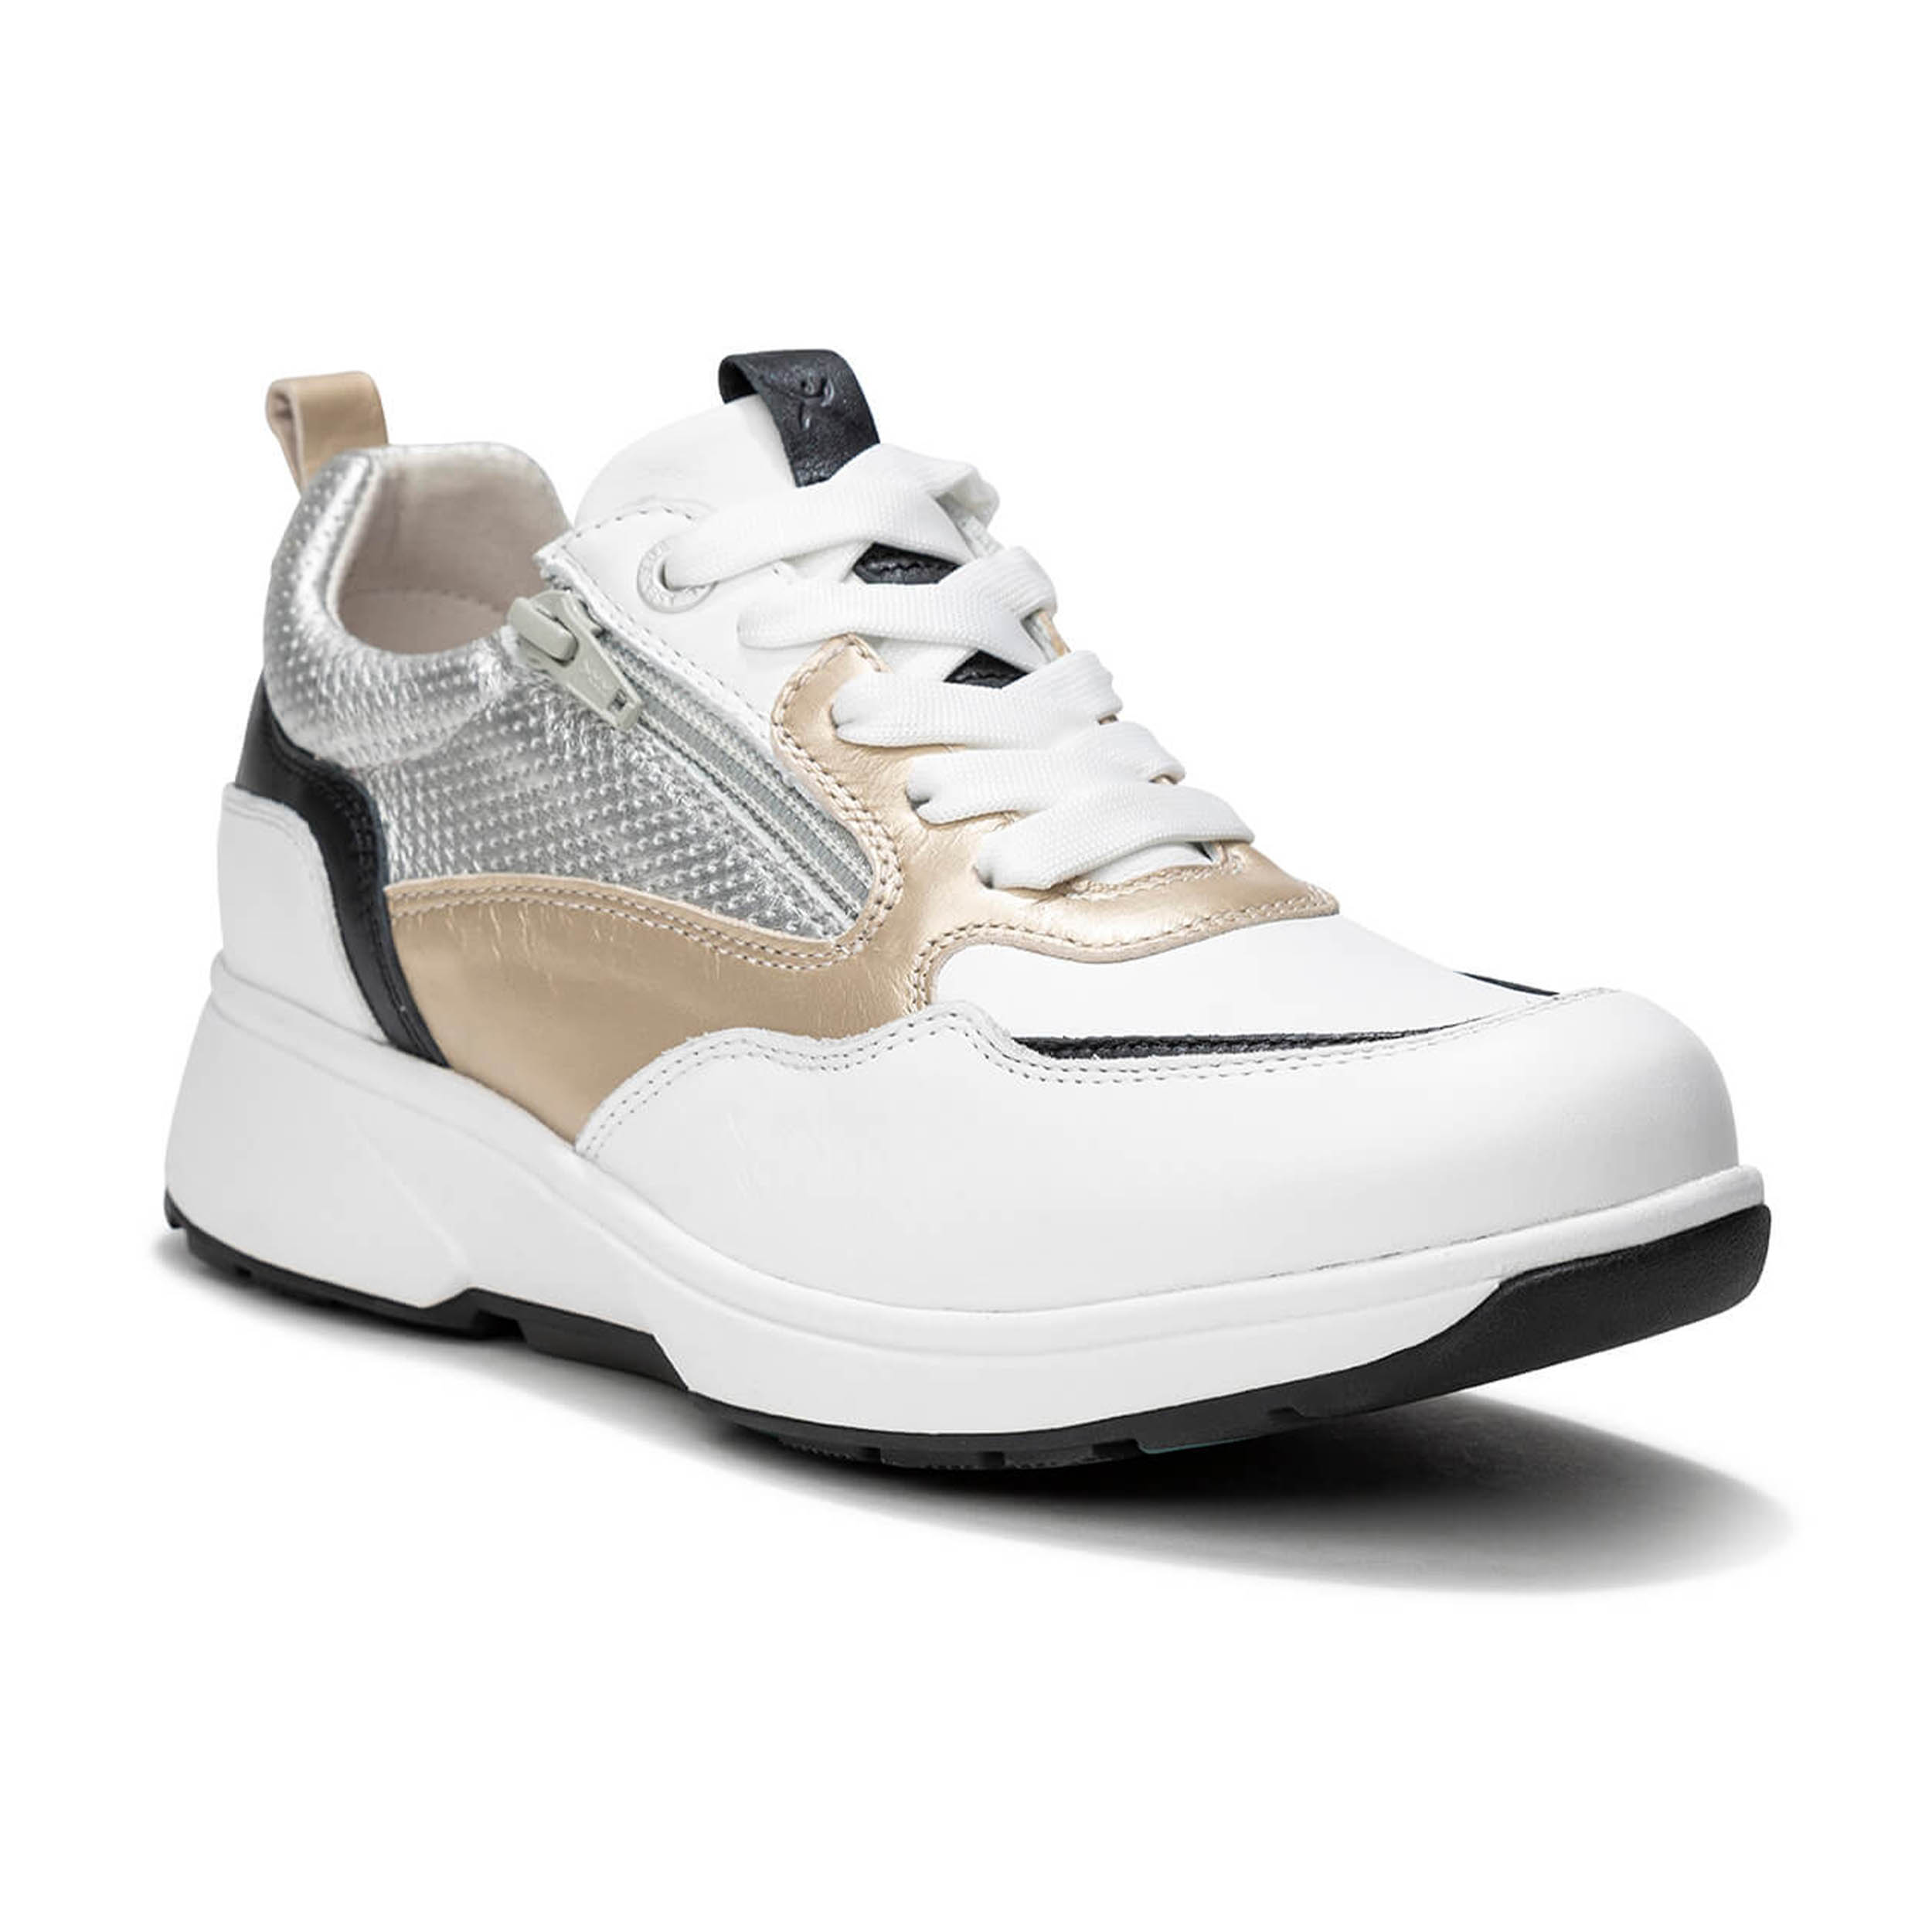 Xsensible 30215.3 Sneaker Grenoble White Combi Hx